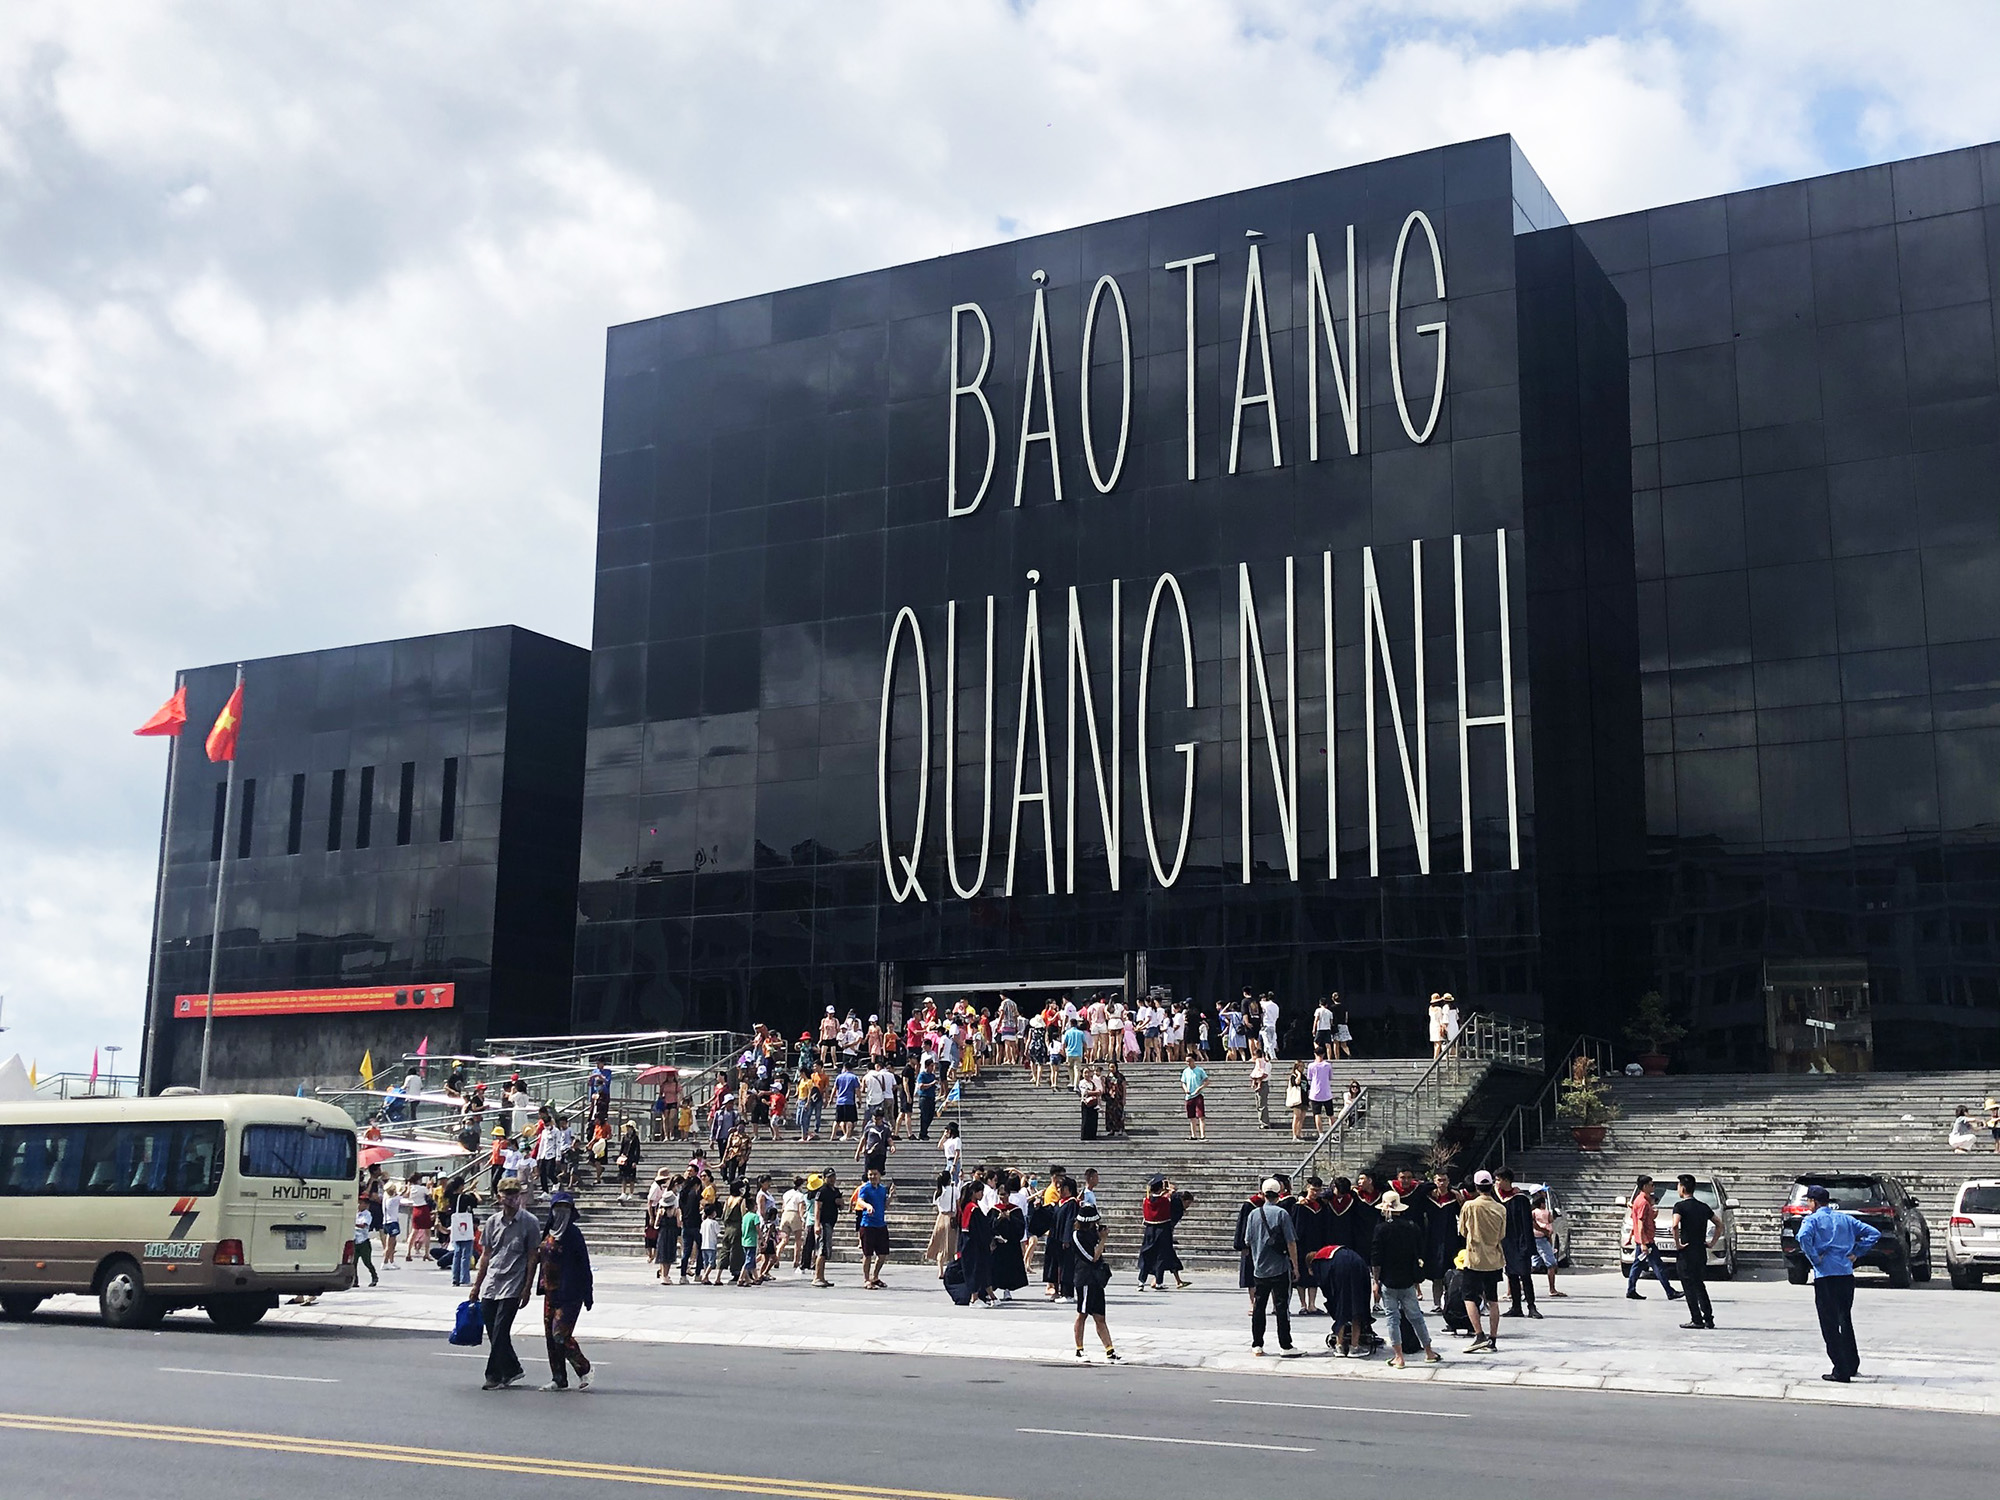 Lượng khách đến với Bảo tàng Quảng Ninh vào những ngày cuối tuần tăng đột biến với 9,1 nghìn lượt khách vào ngày 30/5.